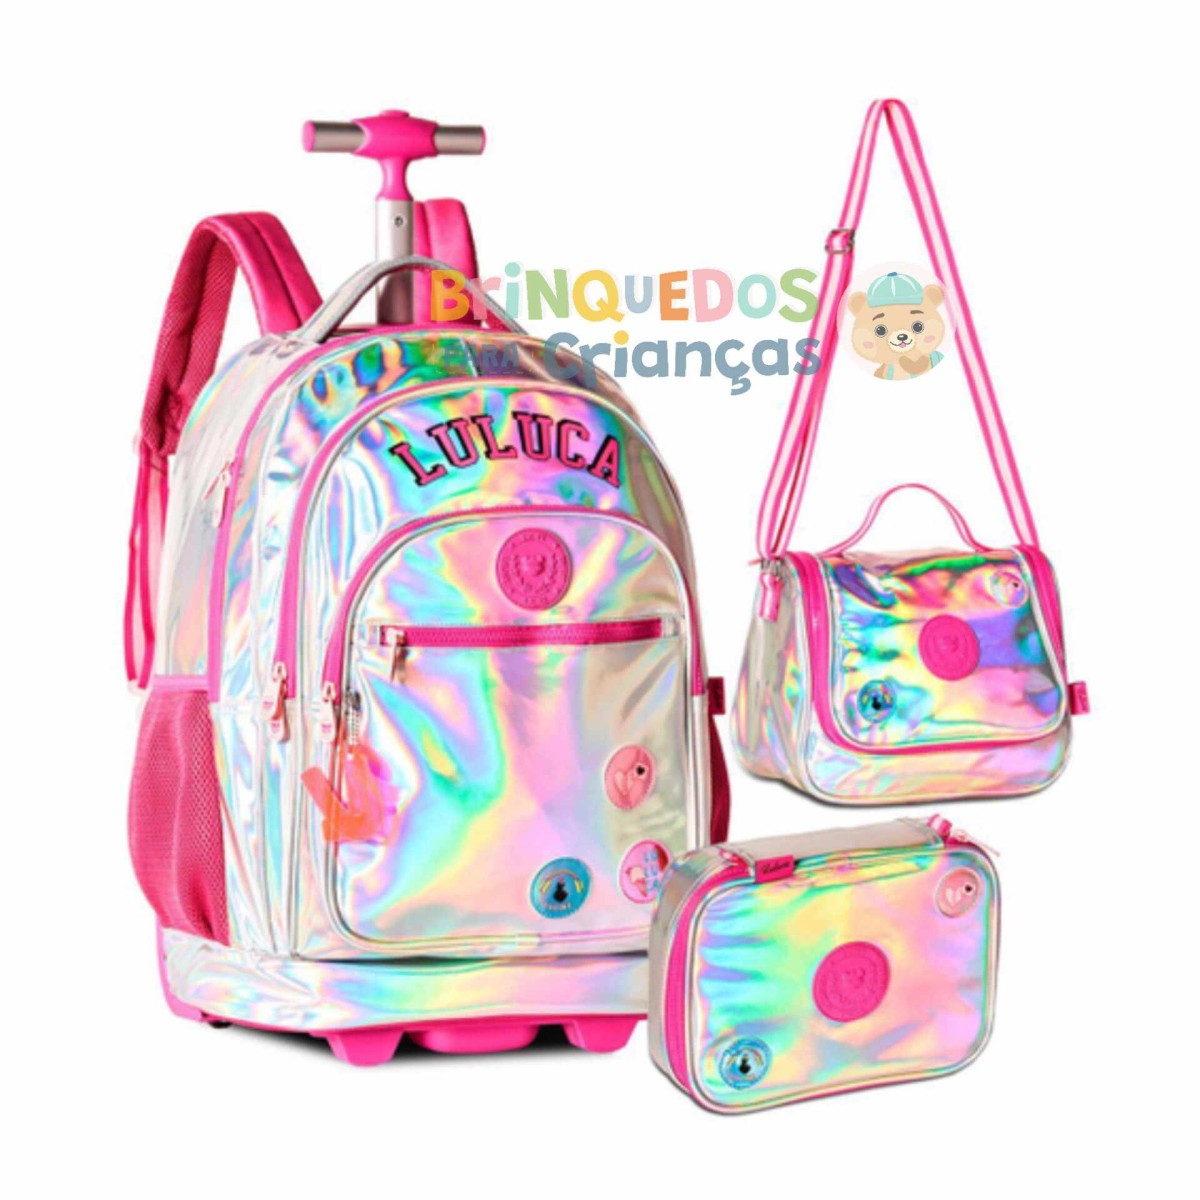 Comprar Conjunto Mochila Escolar holográfica Luluca + Estojo + Lancheira -  Brinquedos Para Crianças